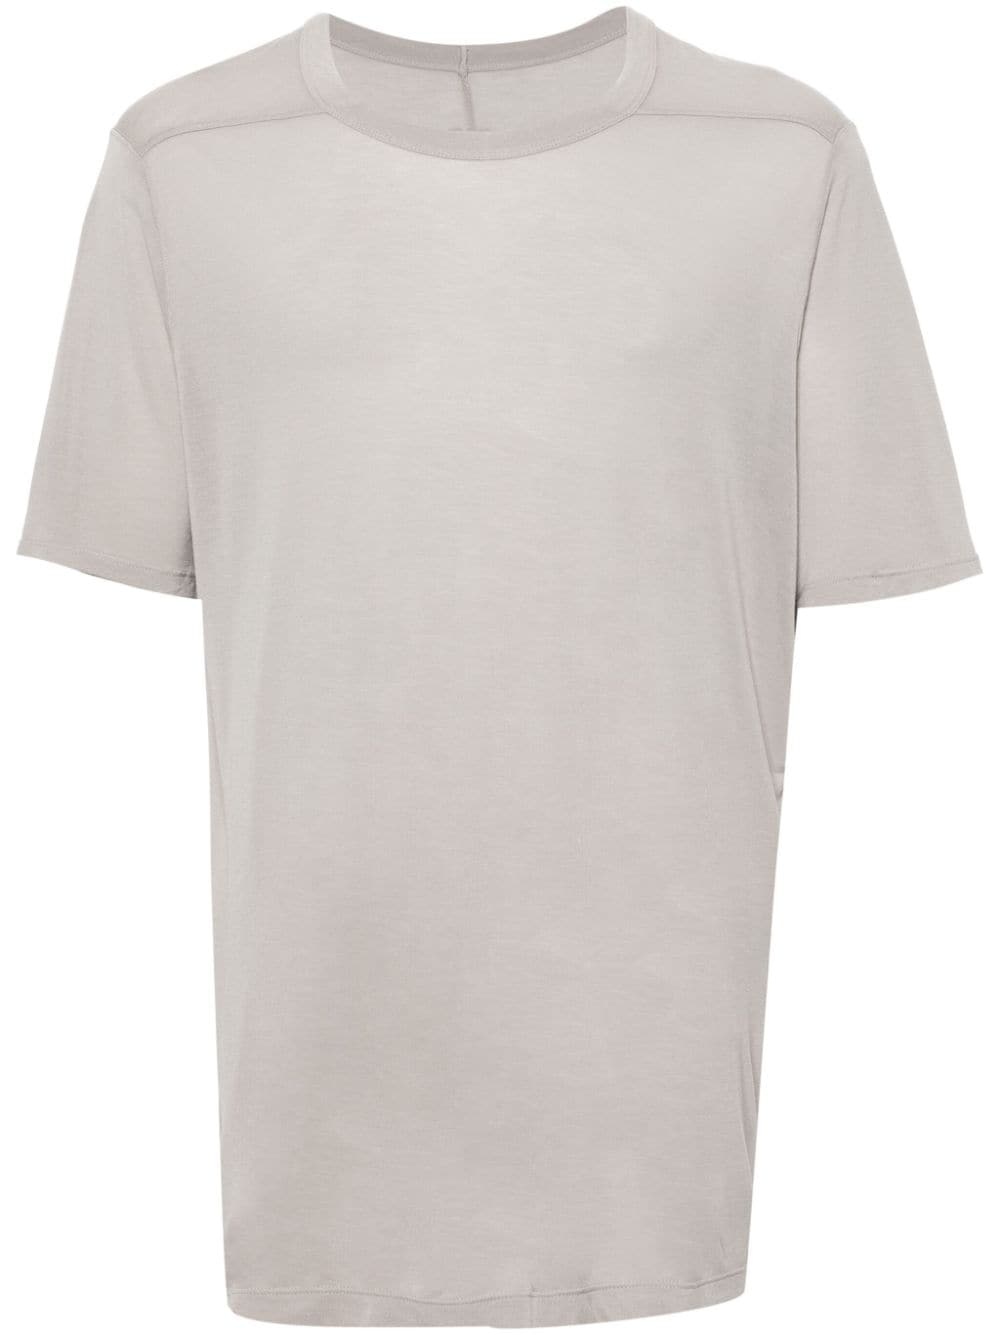 Level T cotton T-shirt - 1